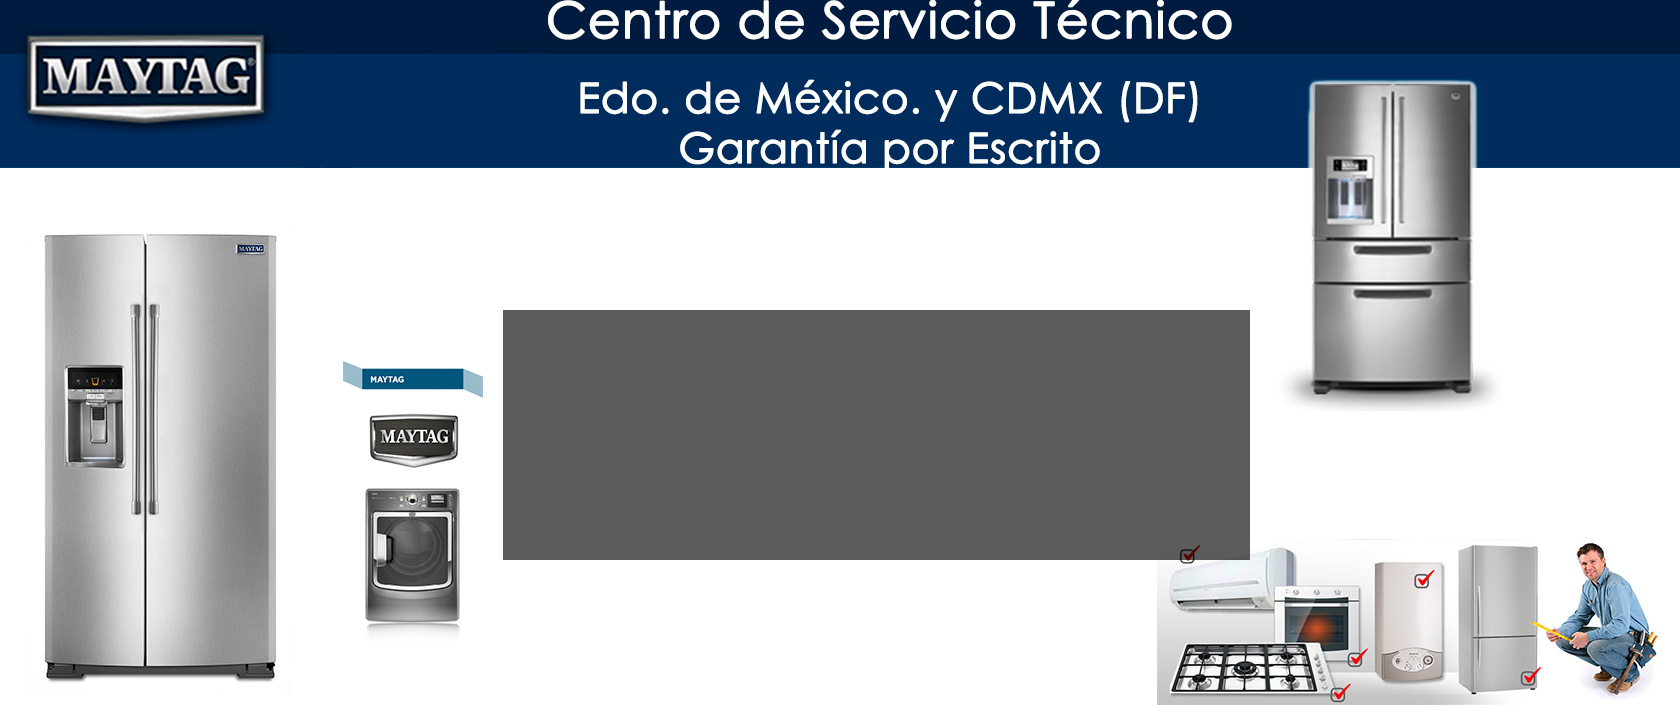 Centro de Servicio Tecnico De Linea Blanca maytag Estado de Mexico DF